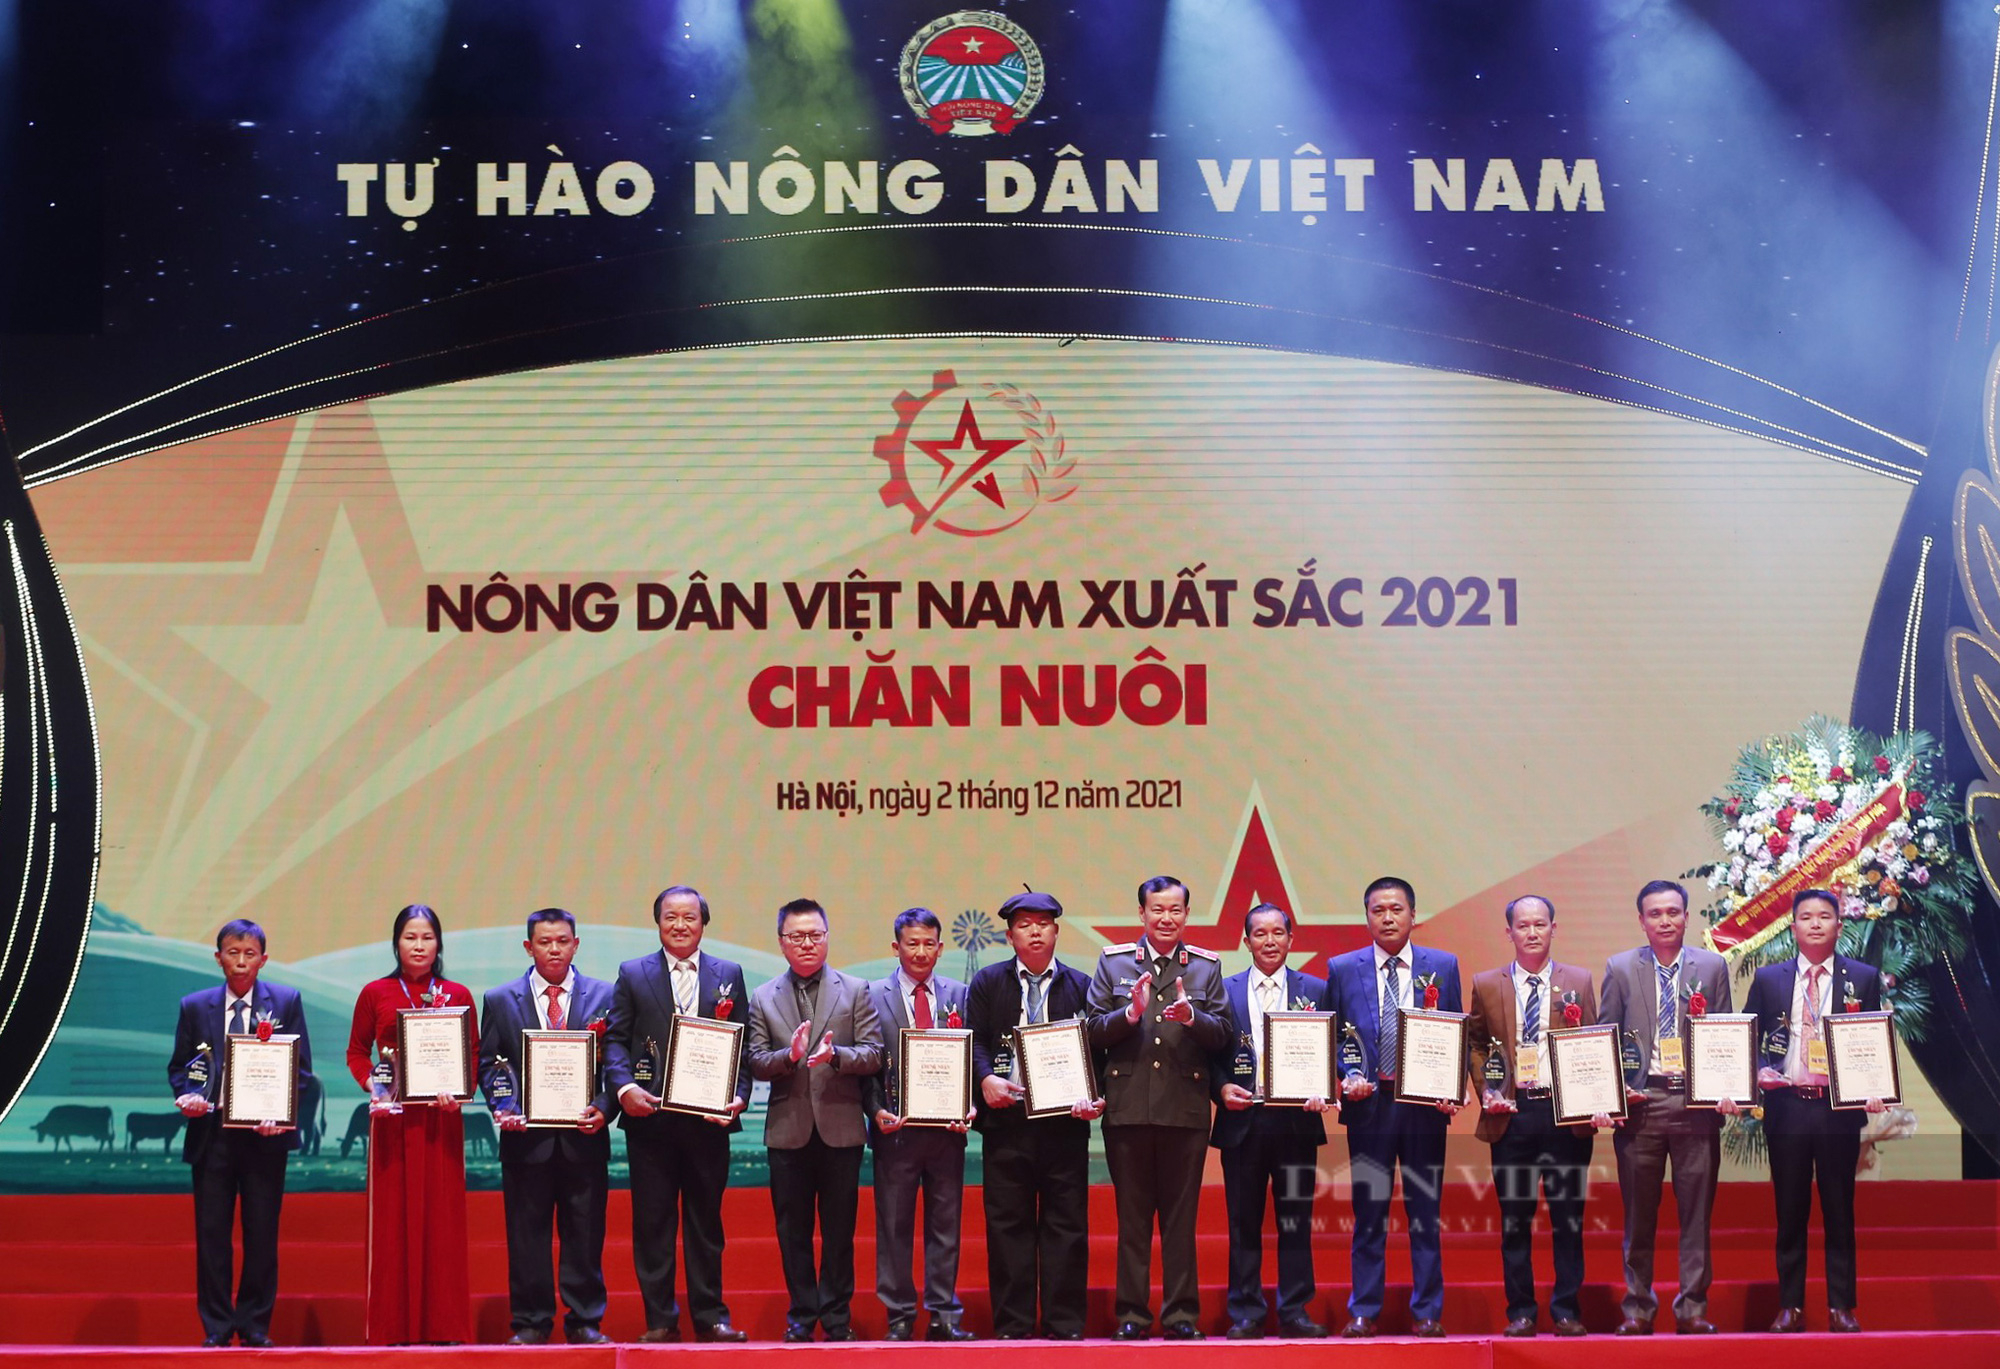 Toàn cảnh đêm Tôn vinh 63 nông dân Việt Nam xuất sắc năm 2021 - Ảnh 9.